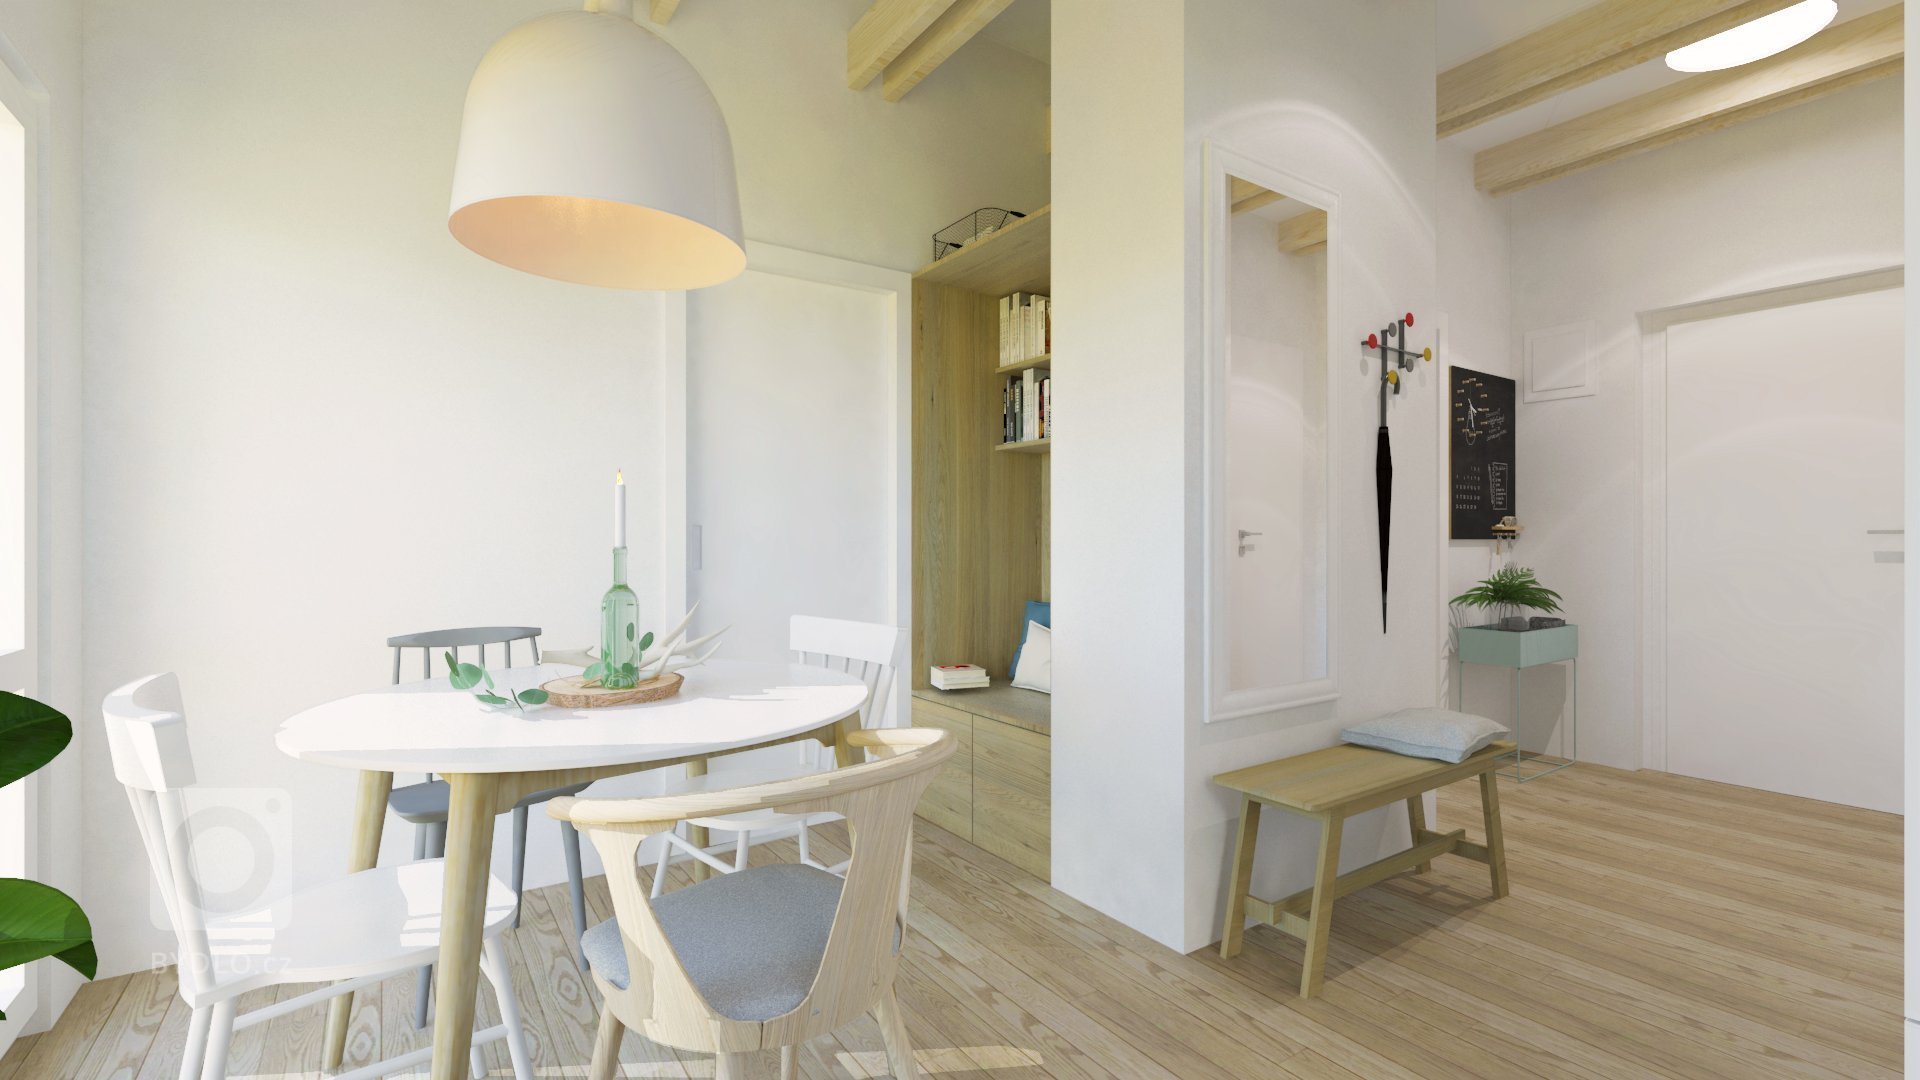 Návrh interiéru podkrovného bytu využíva relatívne malý priestor dennej zóny na maximum, pričom ho opticky neprepĺňa. Líniová hmota kuchyne plynulo prechádza…